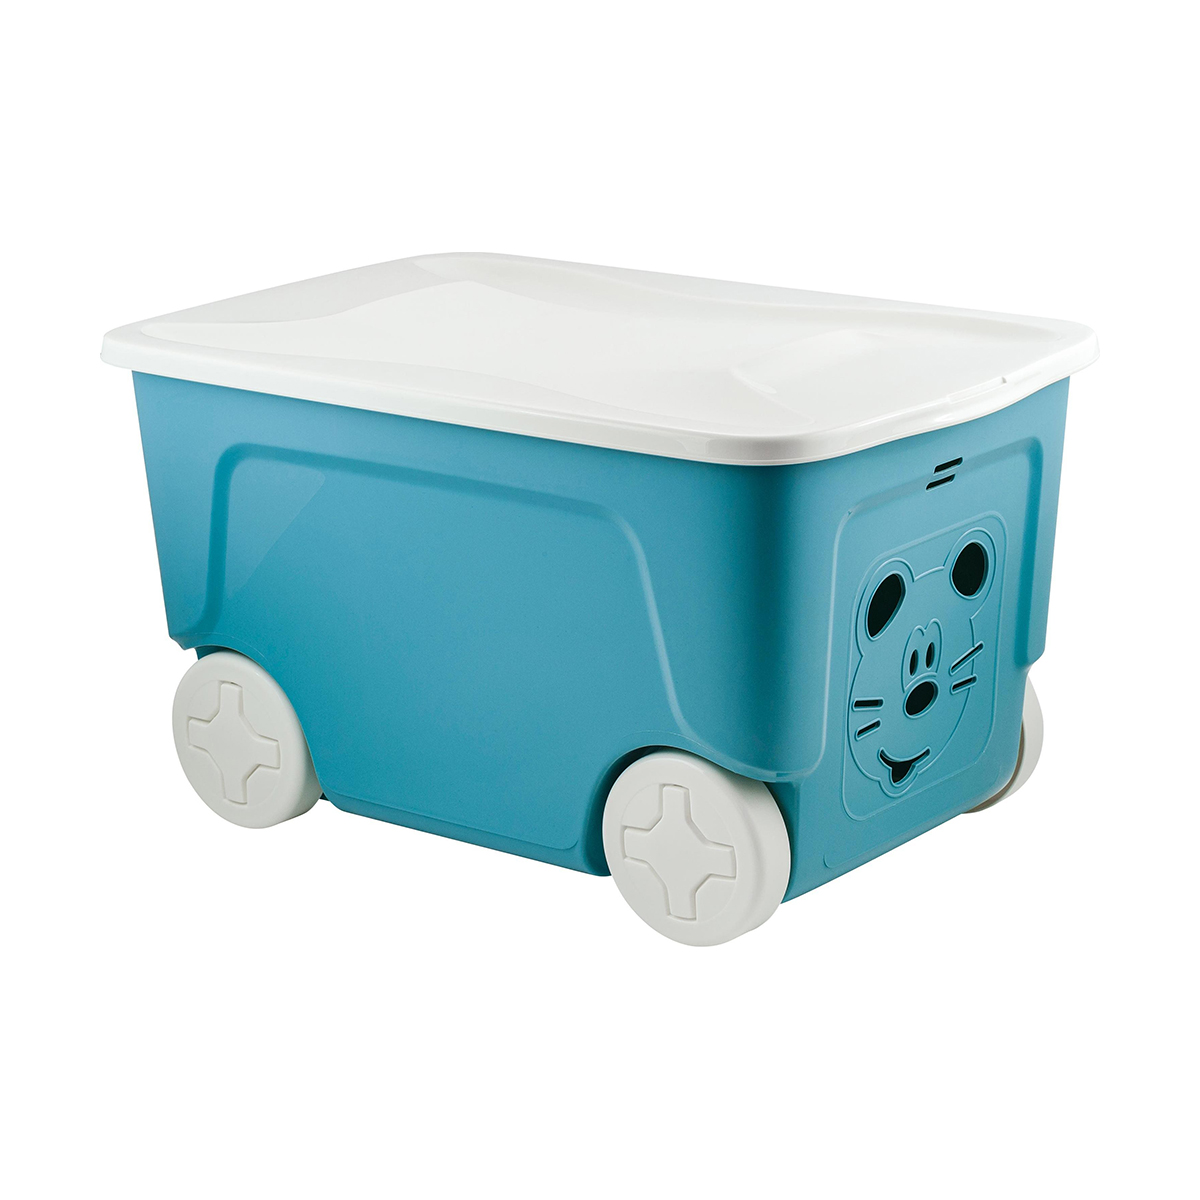 Ящик для игрушек на колесах Lalababy Play with Me, 59 x 38,3 x 33 см, 50 л, синий колокол